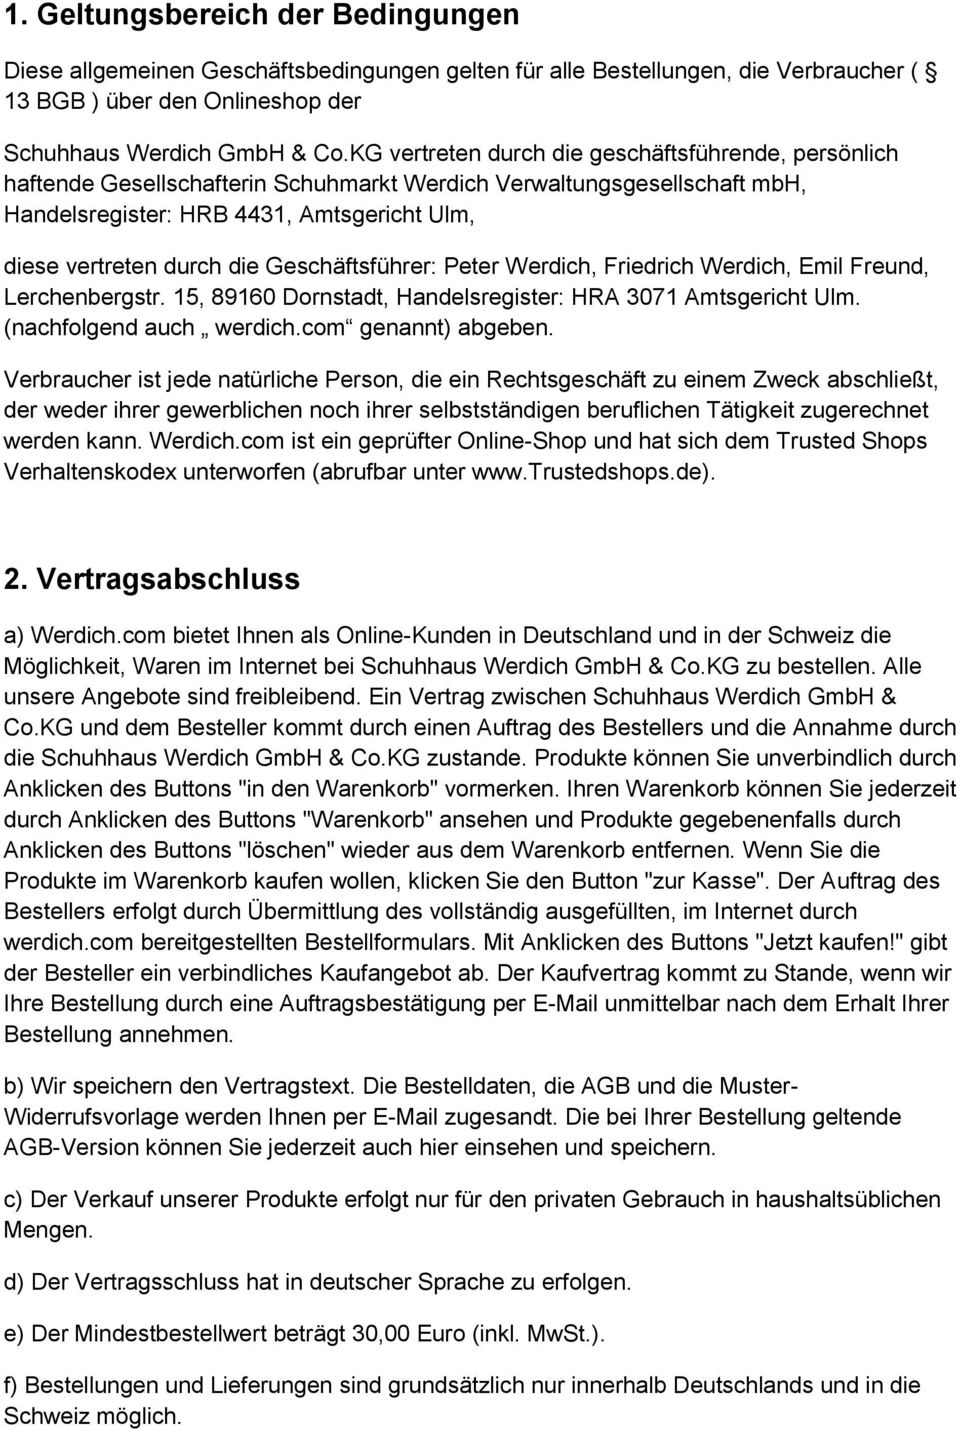 Geschäftsführer: Peter Werdich, Friedrich Werdich, Emil Freund, Lerchenbergstr. 15, 89160 Dornstadt, Handelsregister: HRA 3071 Amtsgericht Ulm. (nachfolgend auch werdich.com genannt) abgeben.